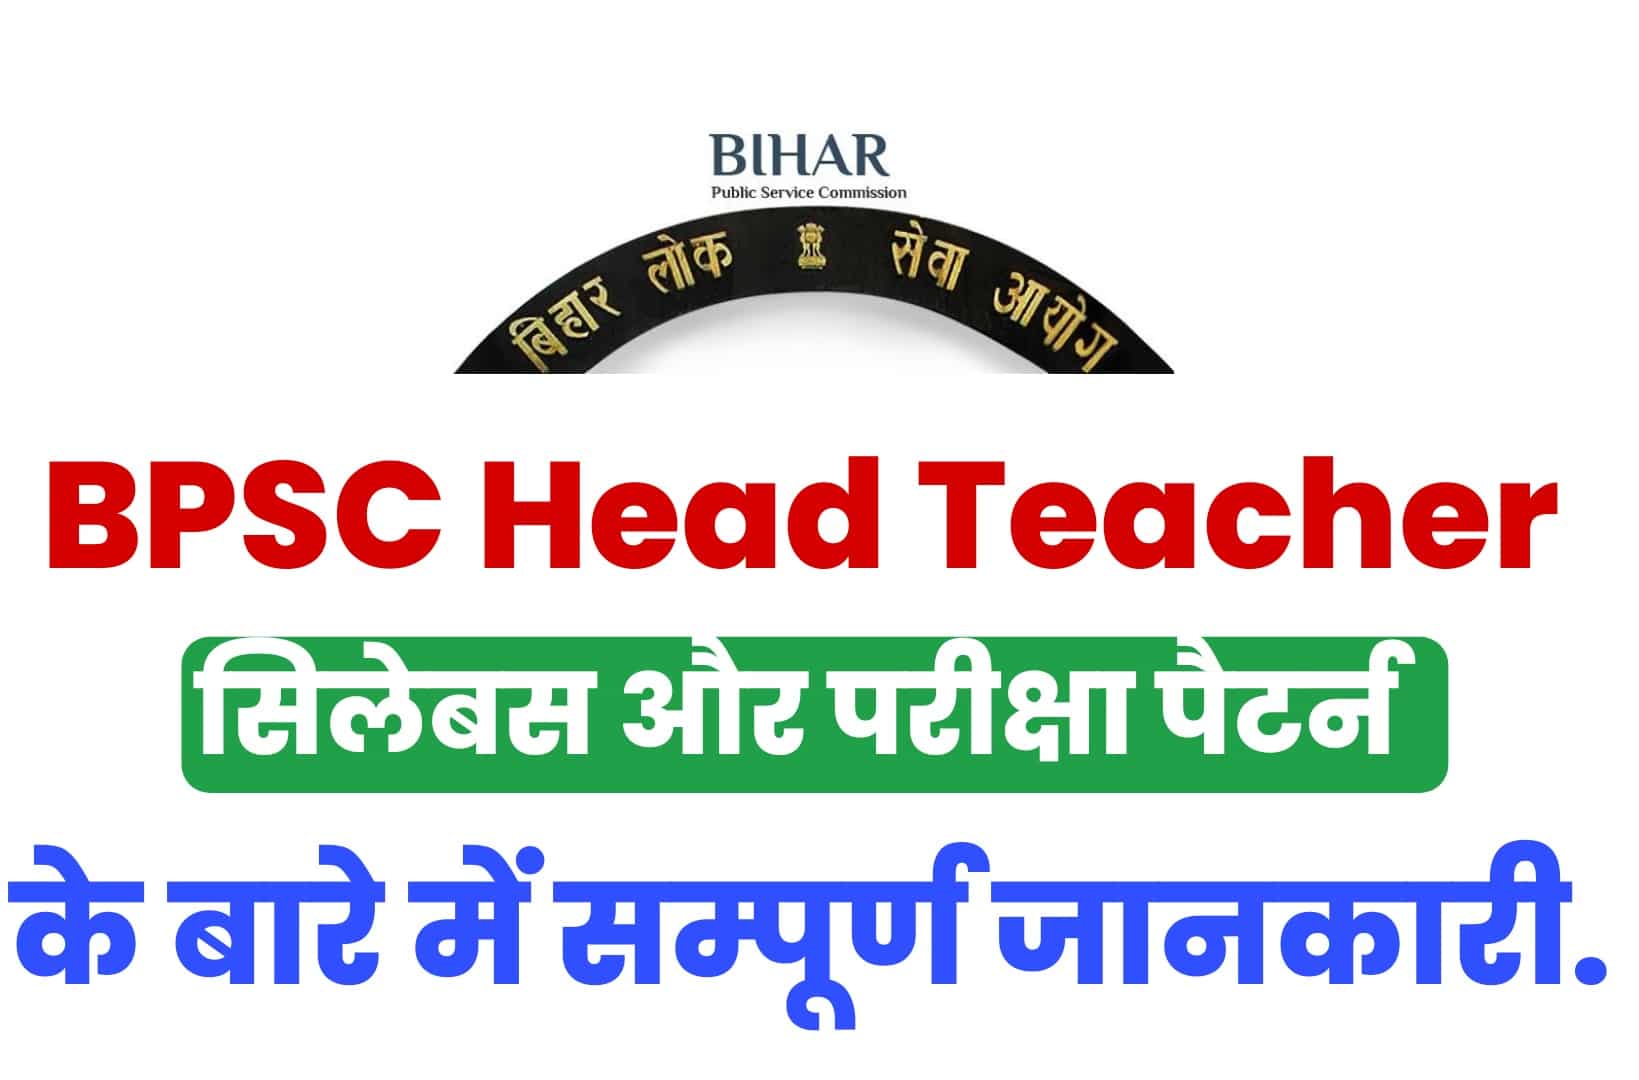 BPSC Head Teacher Syllabus 2023 In Hindi | बिहार प्रधान शिक्षक सिलेबस हिंदी में